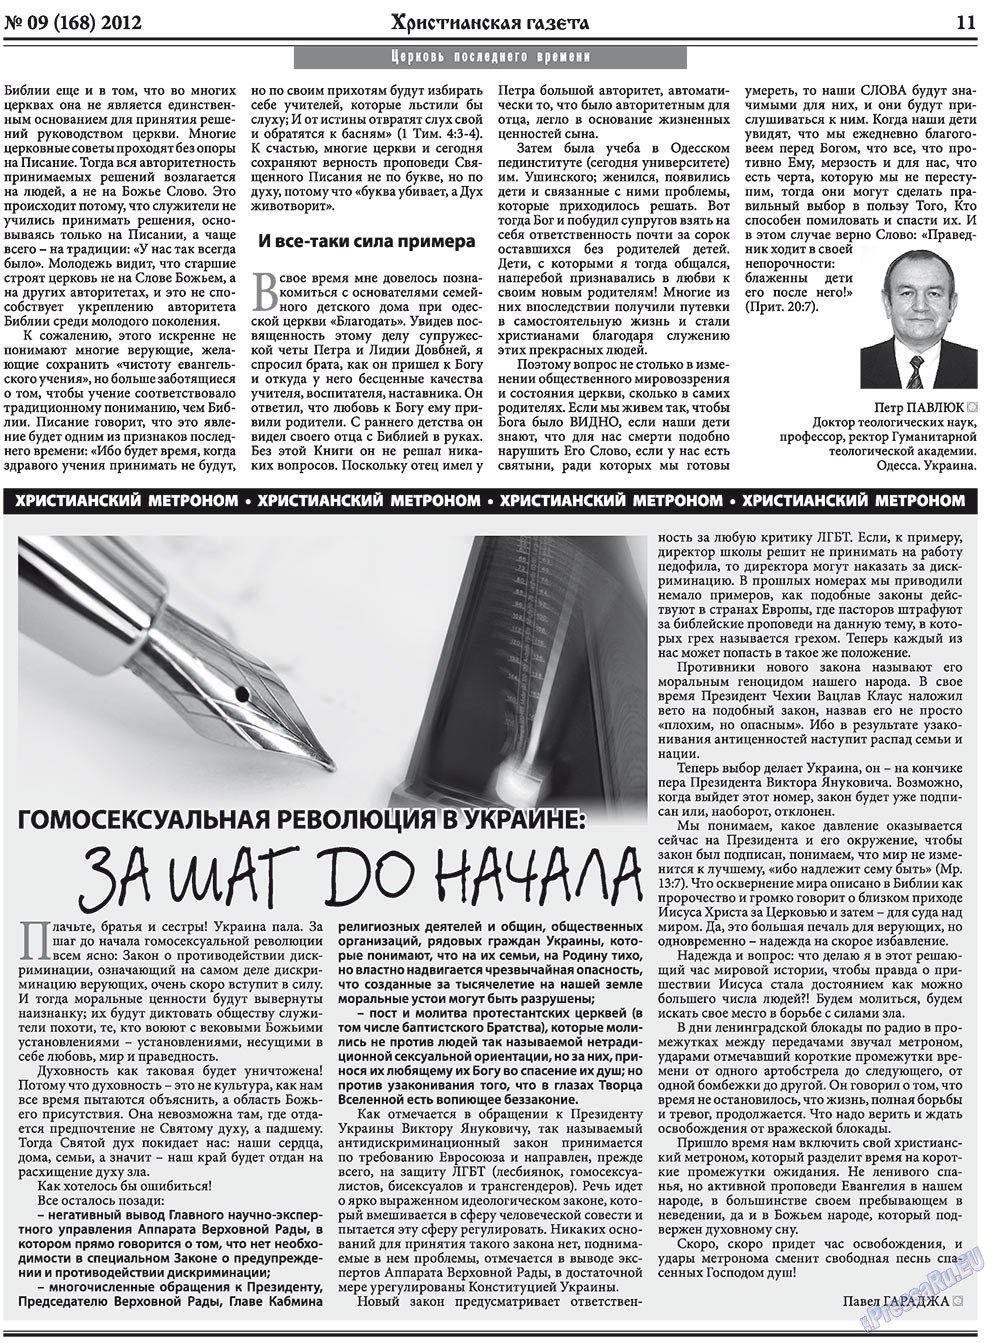 Христианская газета (газета). 2012 год, номер 9, стр. 11